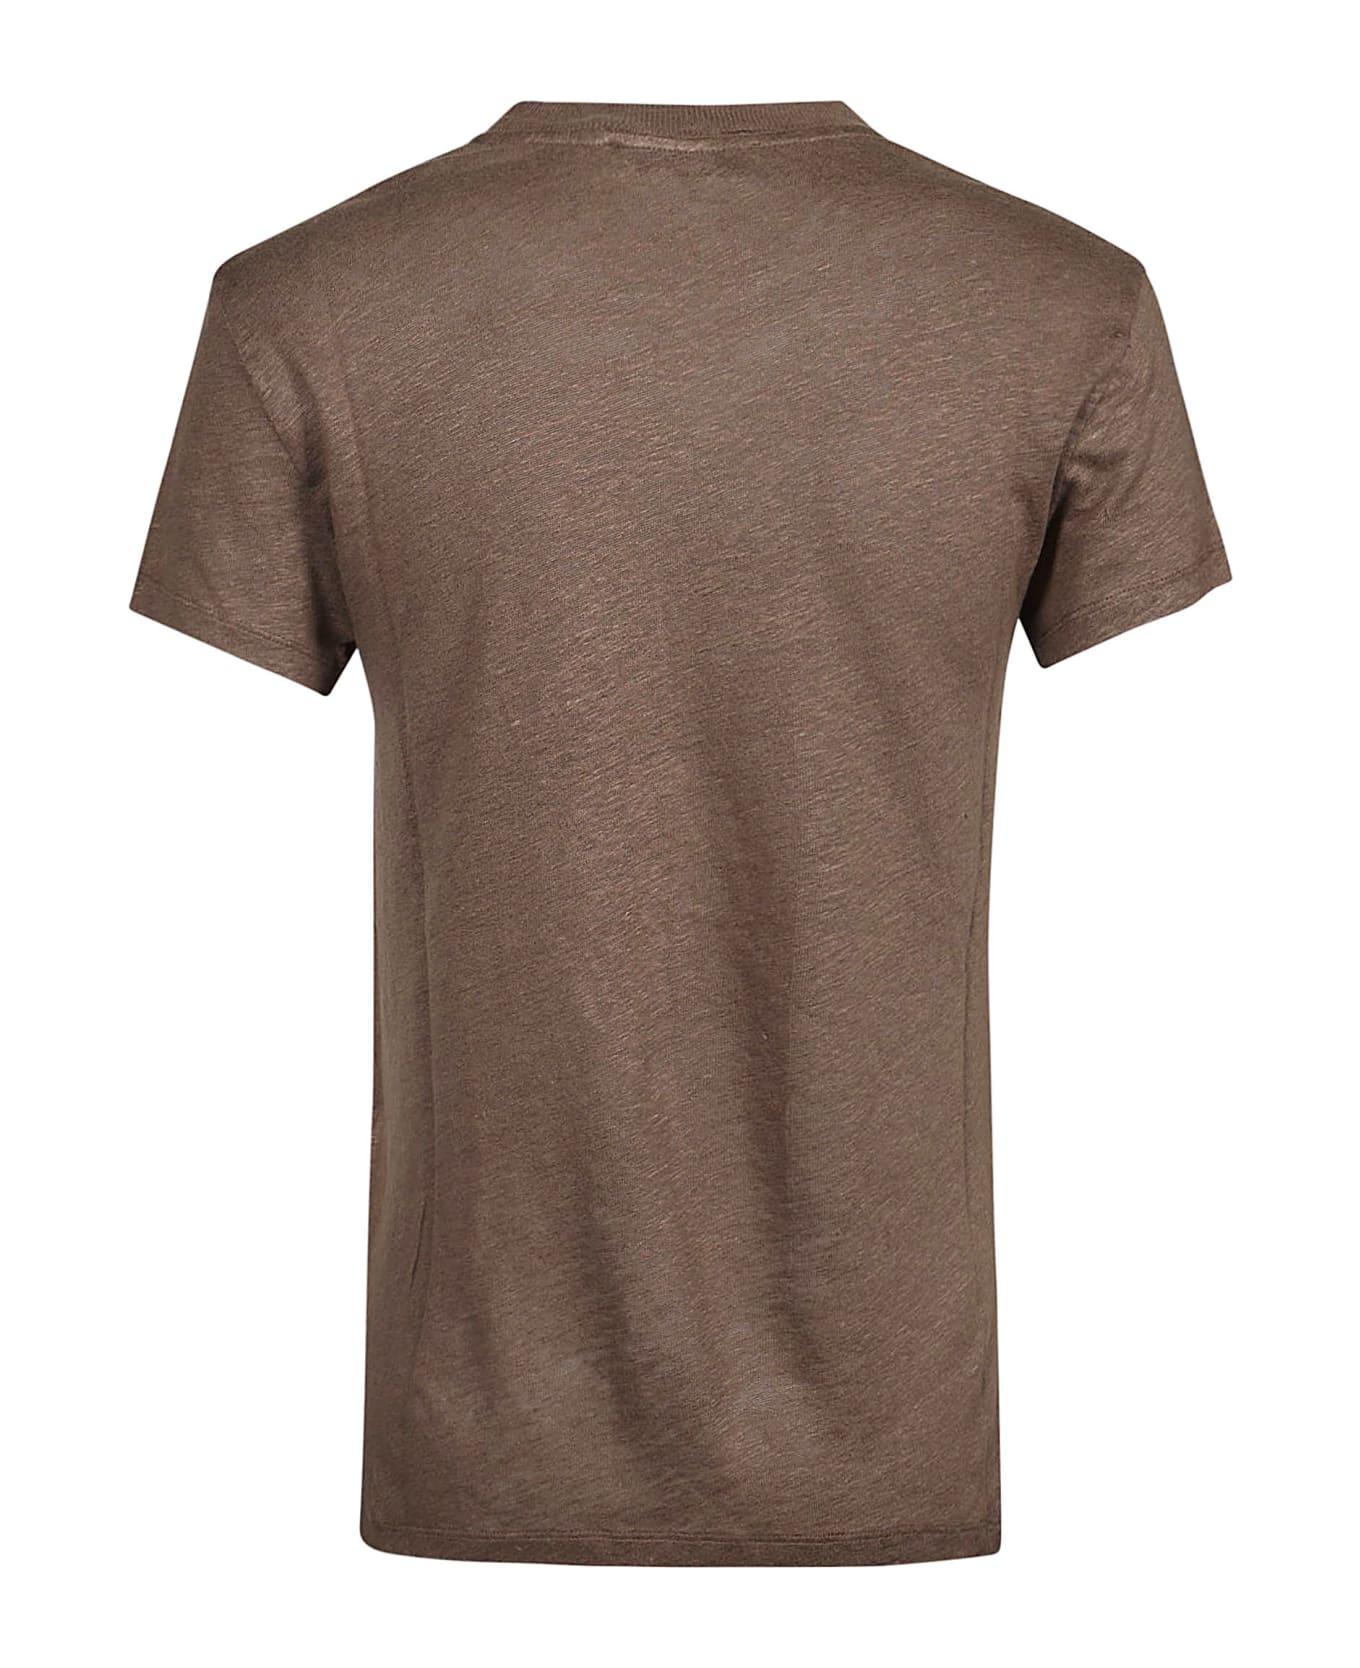 IRO Third T-shirt - Brown Tシャツ